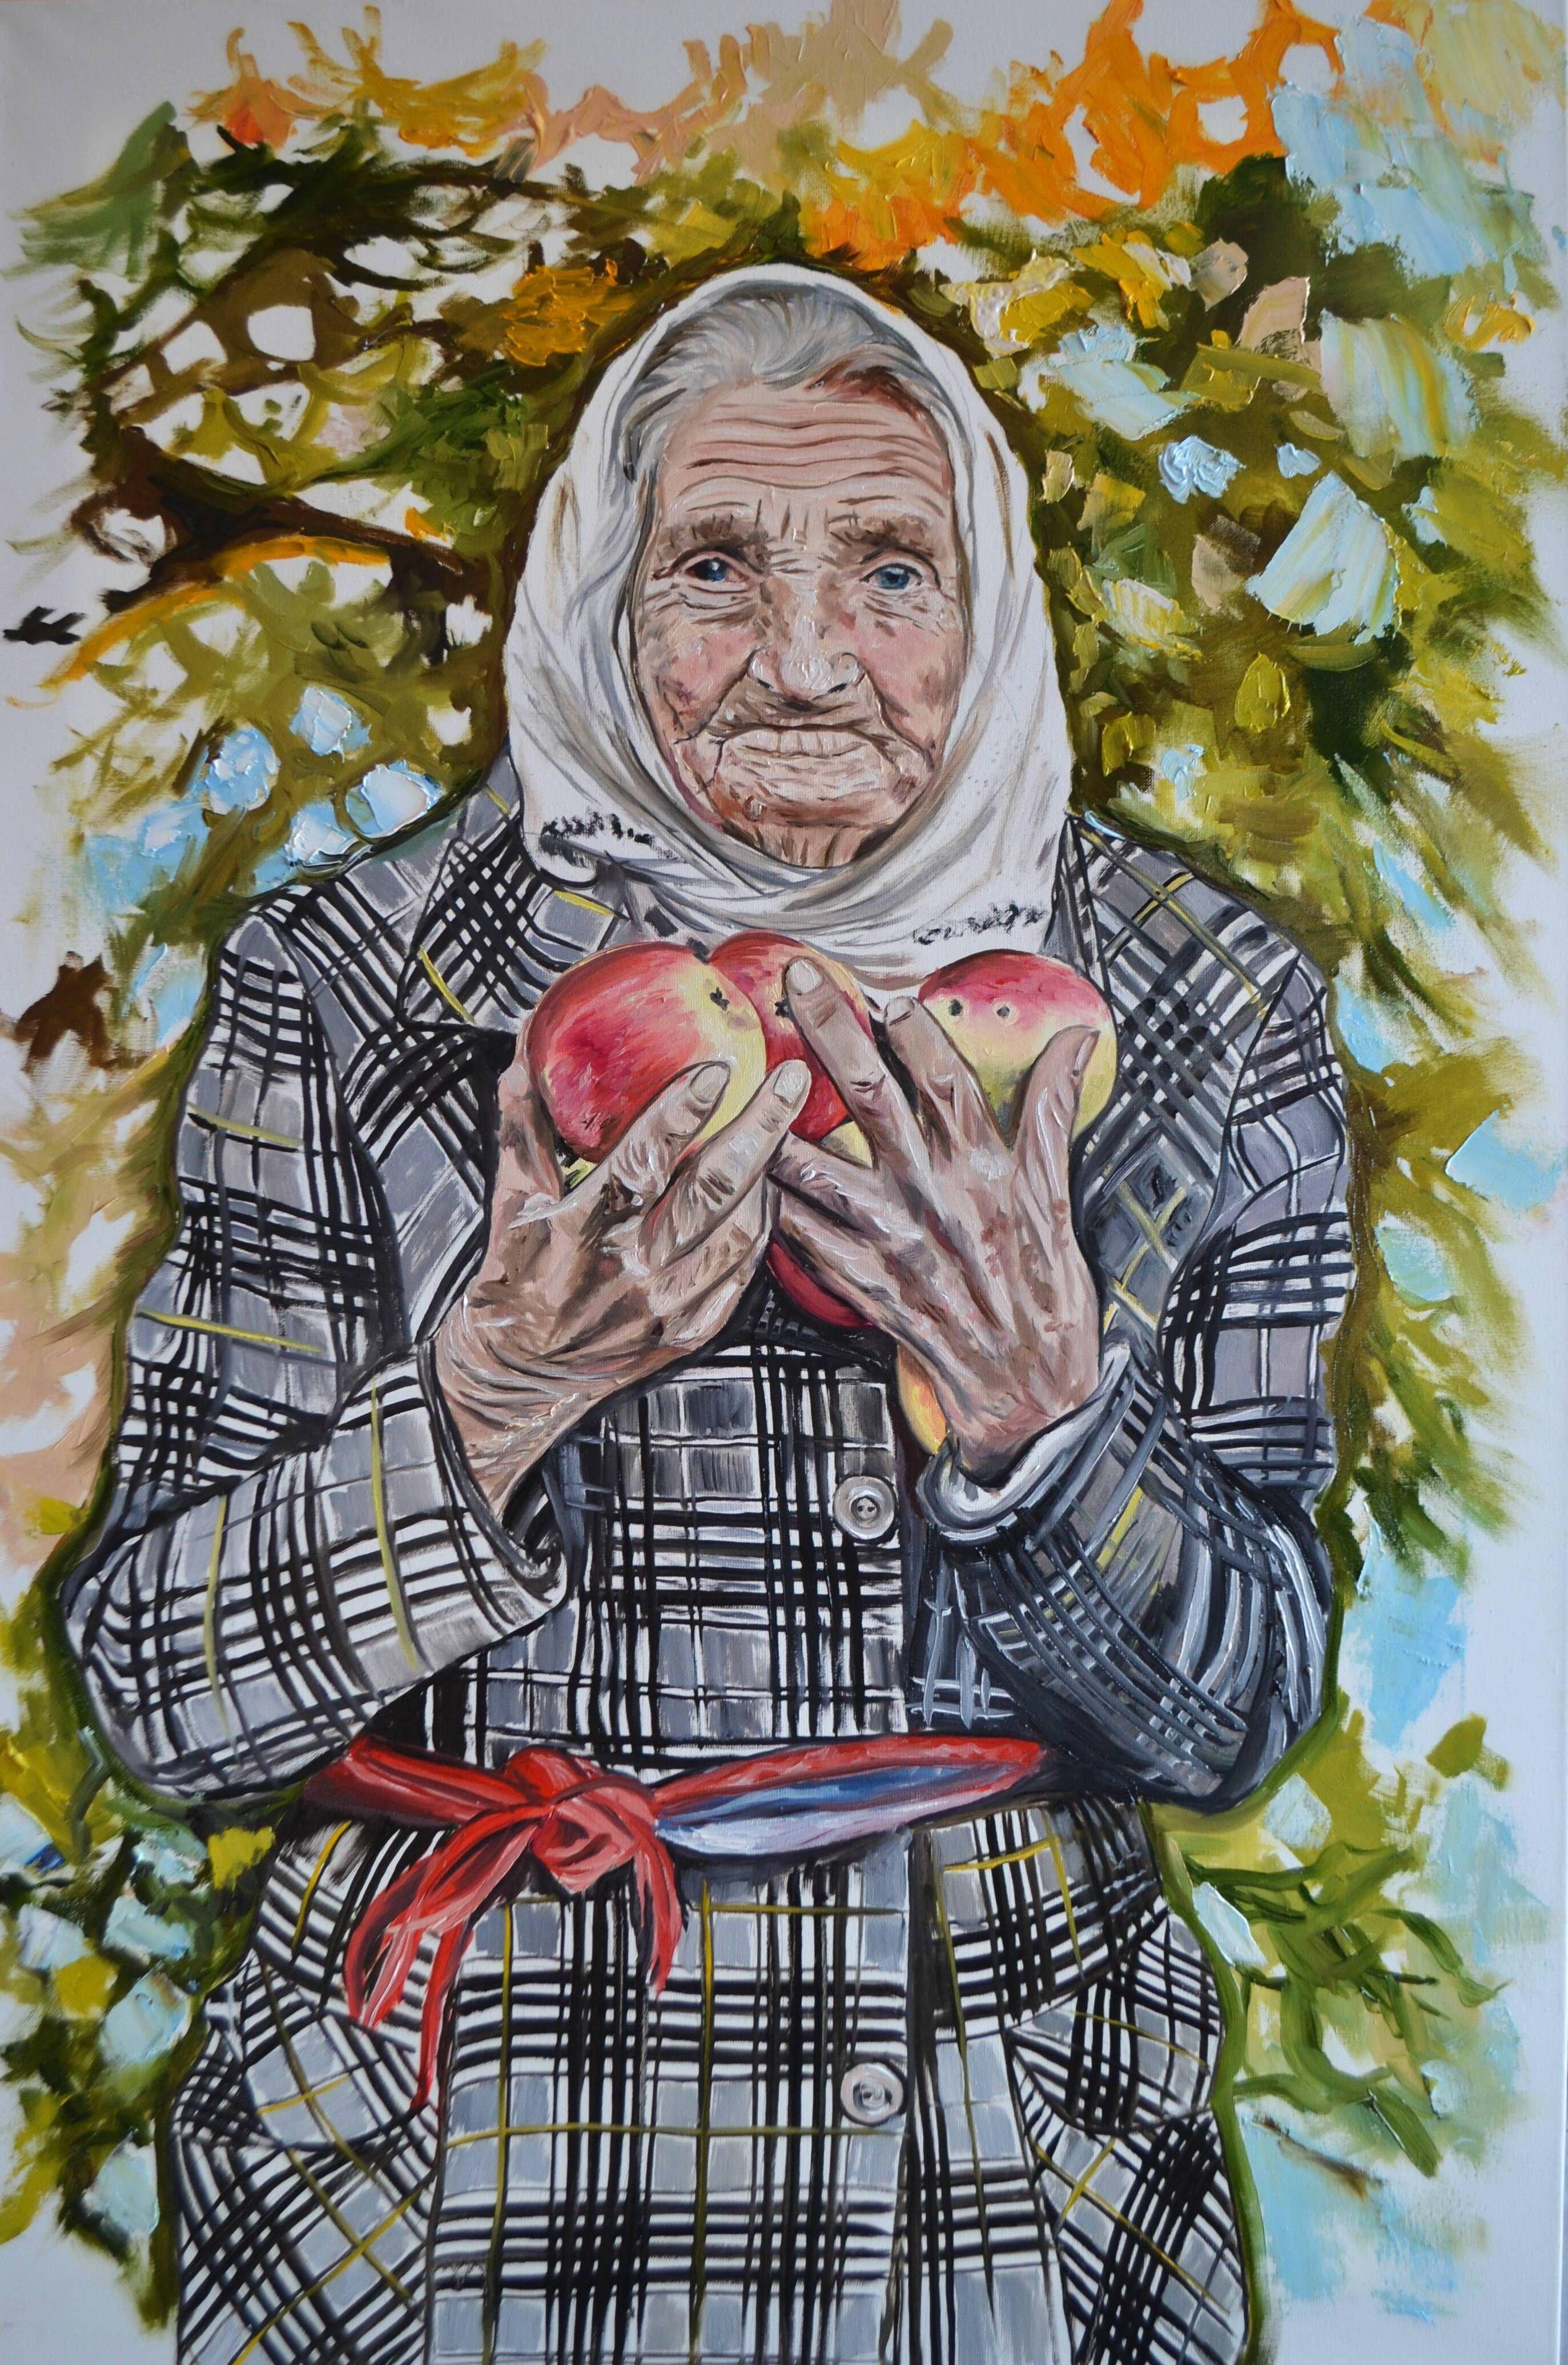 Grandma's Apples, Painting, Oil on Canvas